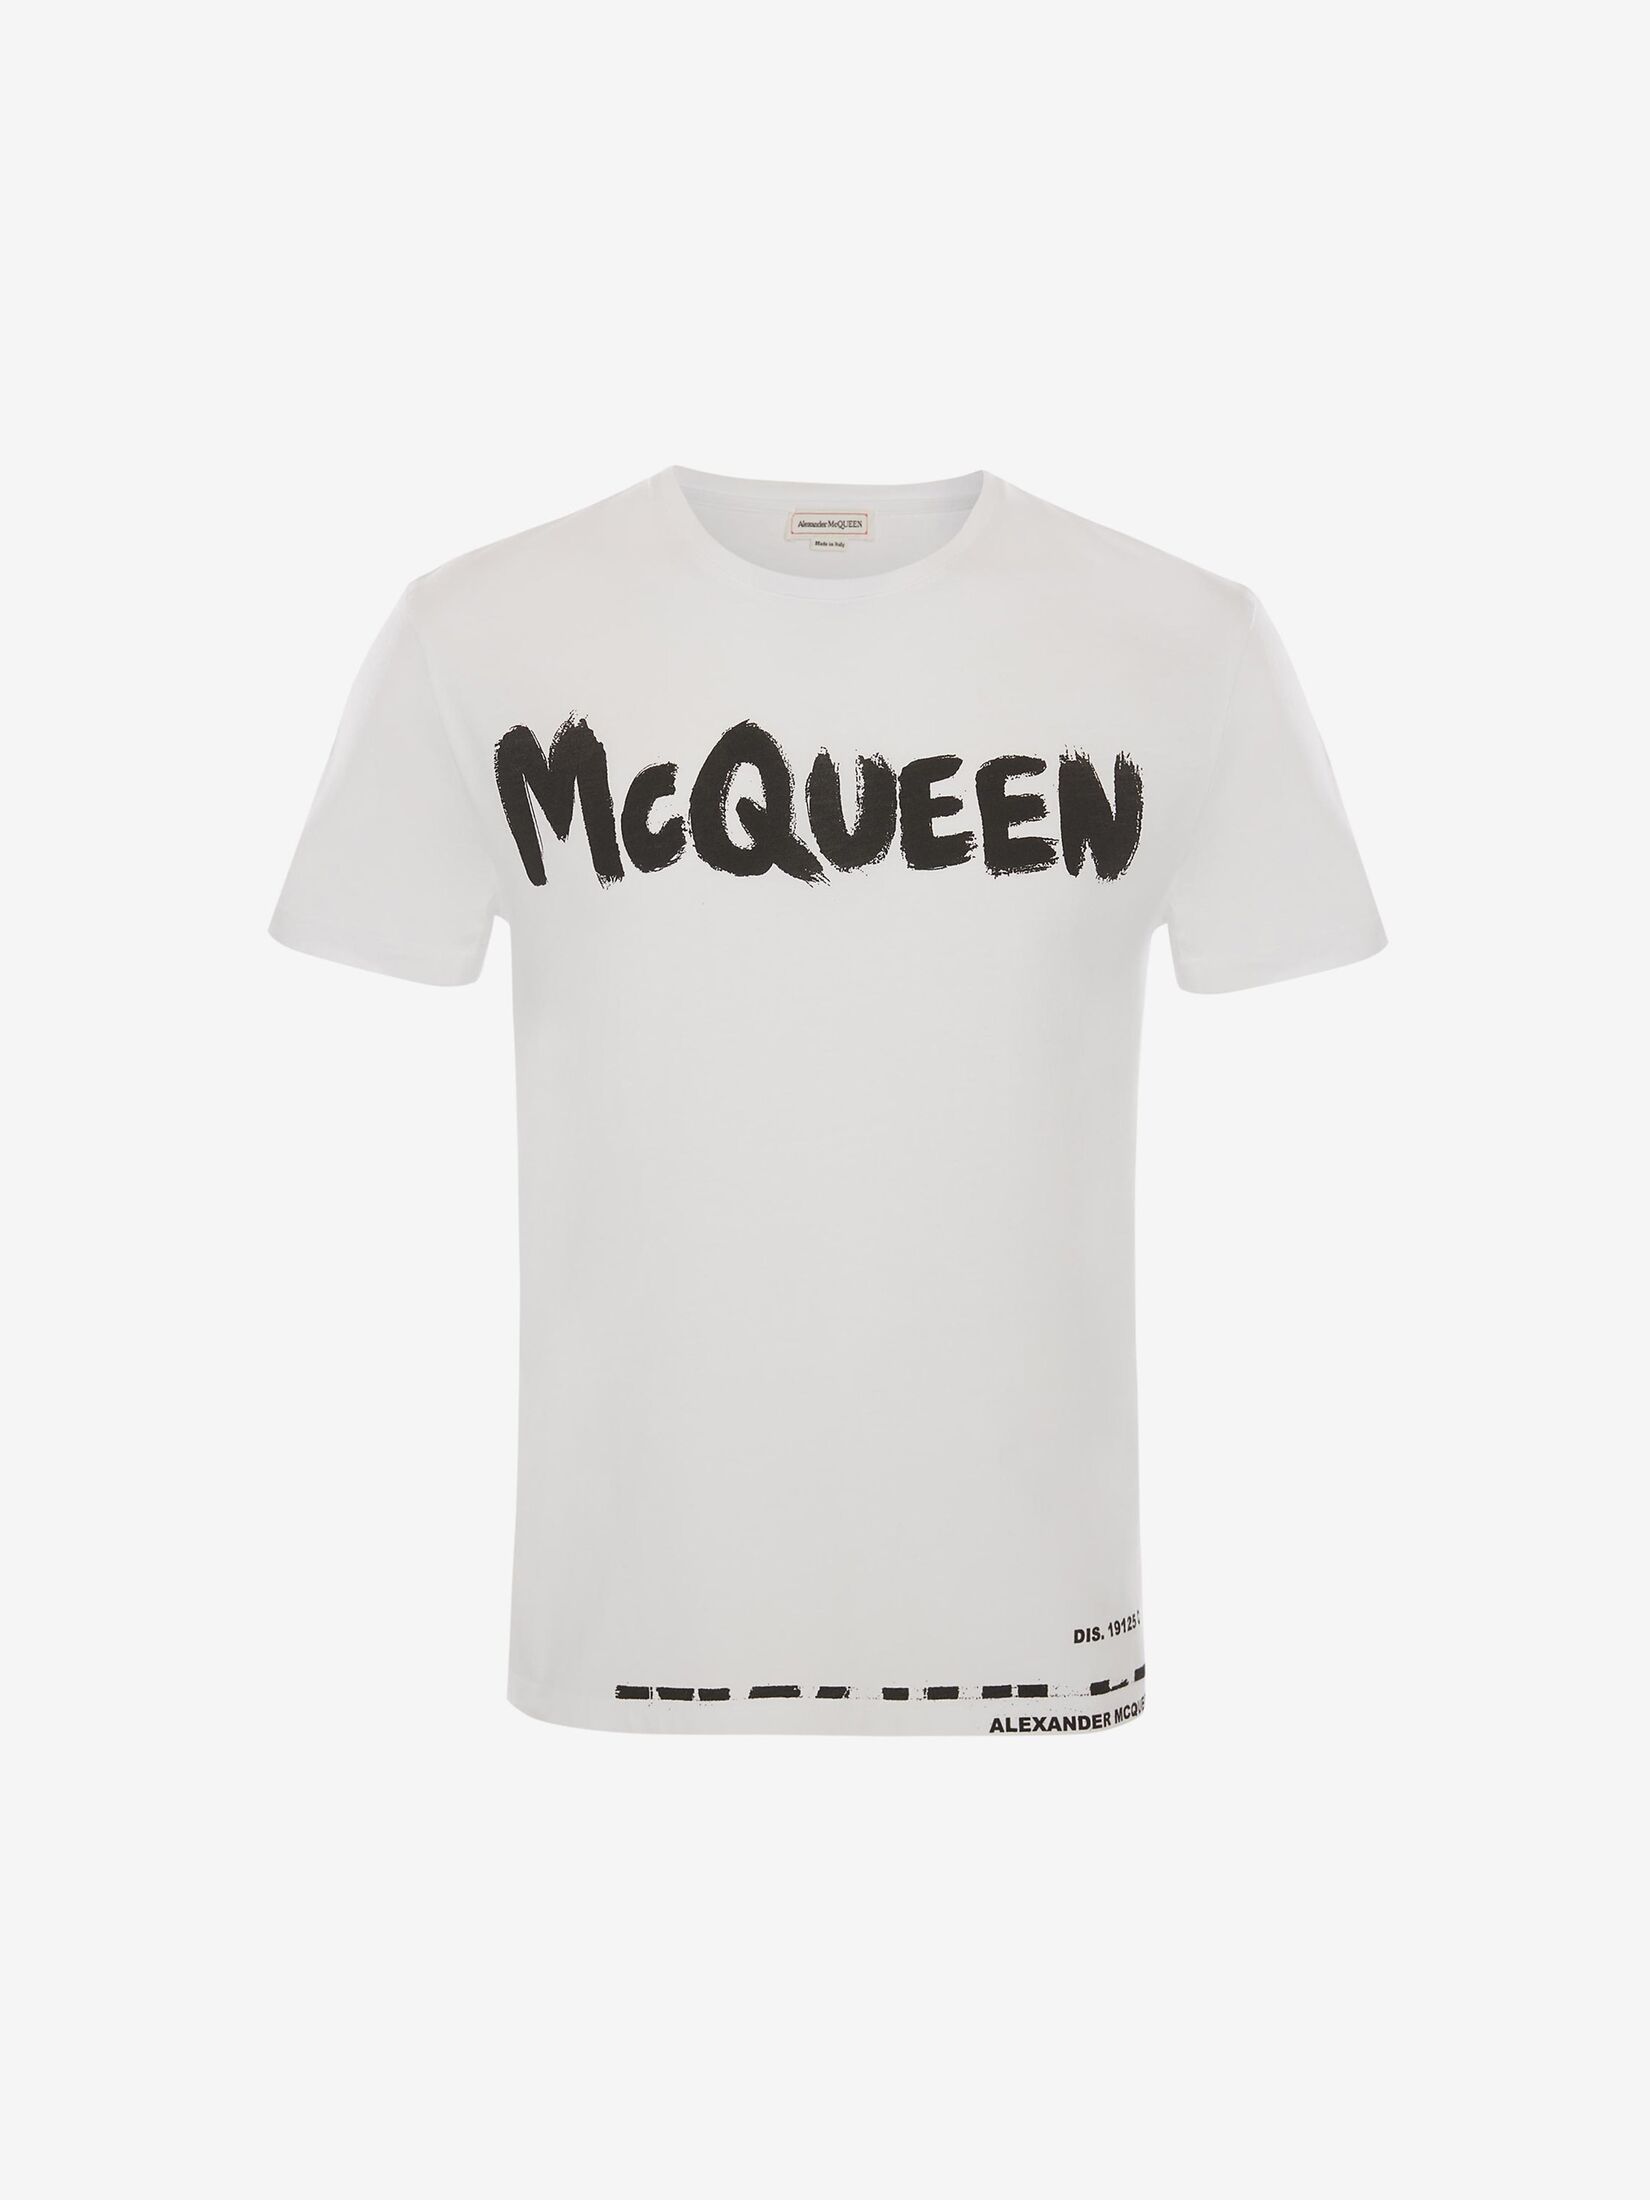 McQueen Graffiti T-Shirt